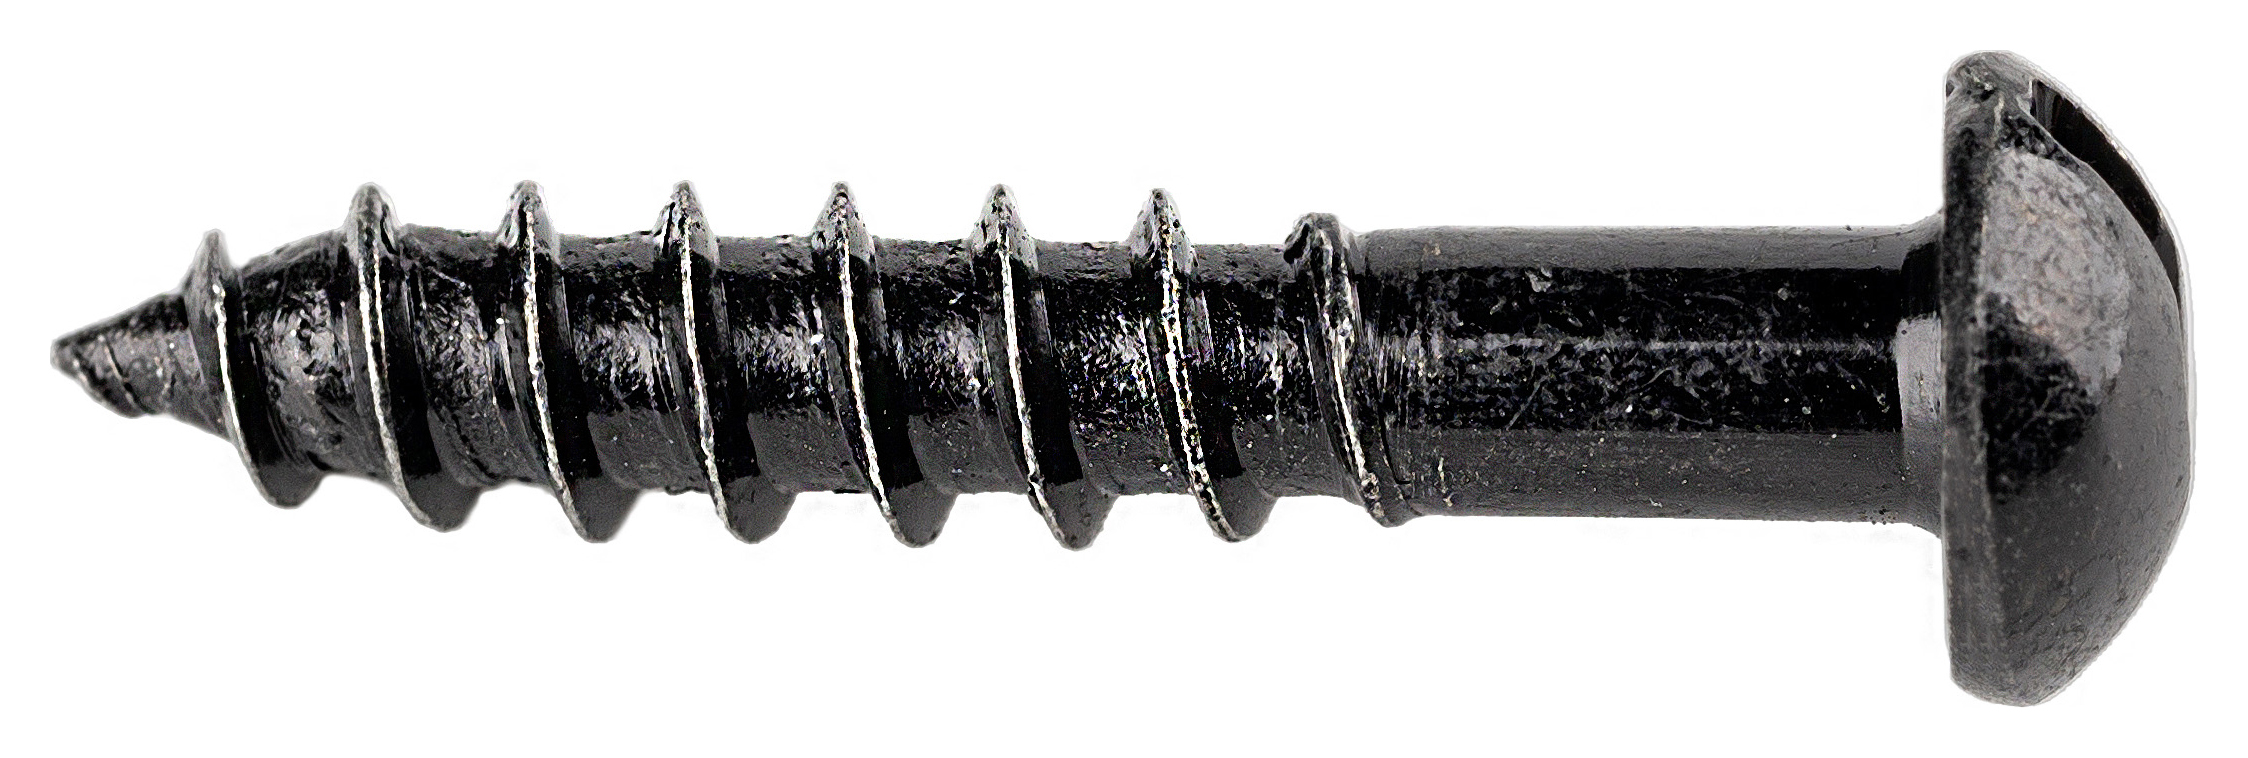 Wickes Black Japanned Wood Screws - 5 x 25mm - Pack of 25